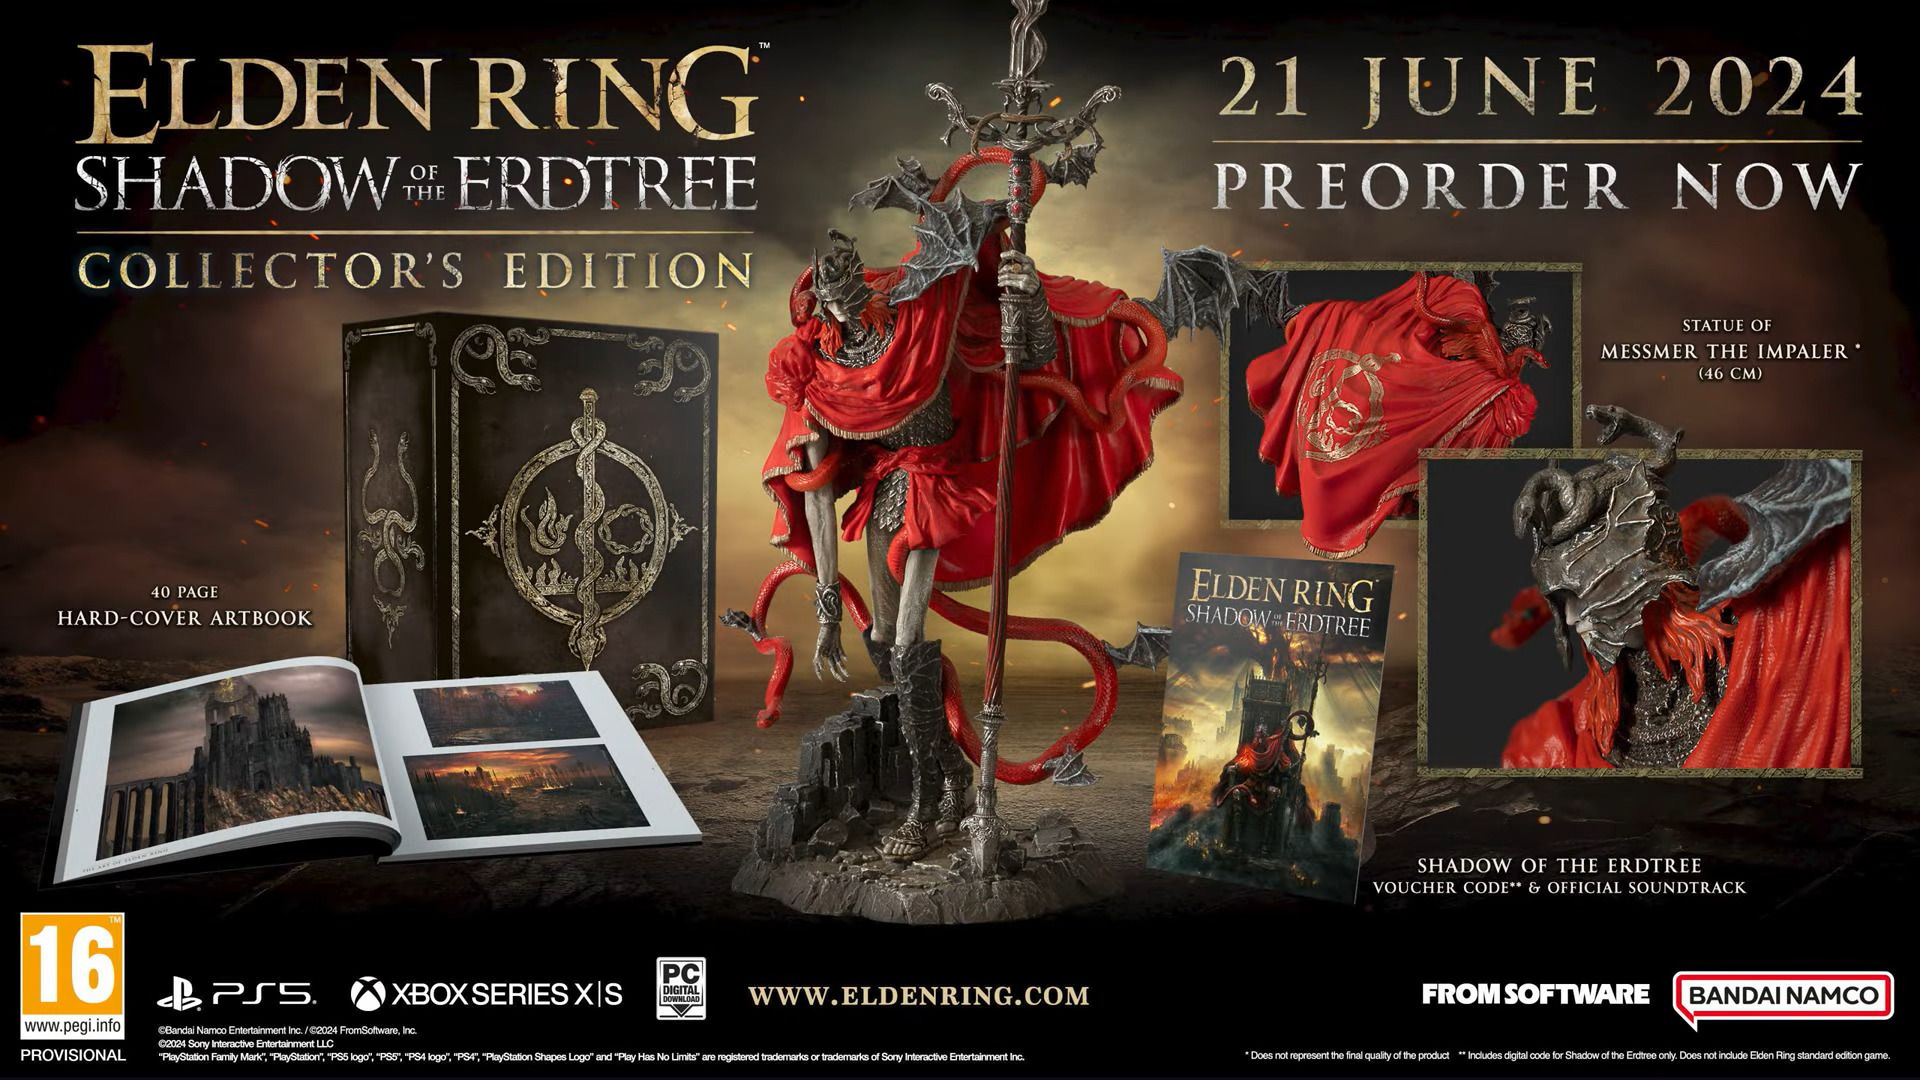 #Elden Ring: „Shadow of the Erdtree“ begeistert Fans mit neuer Collector’s Edition und Gameplay